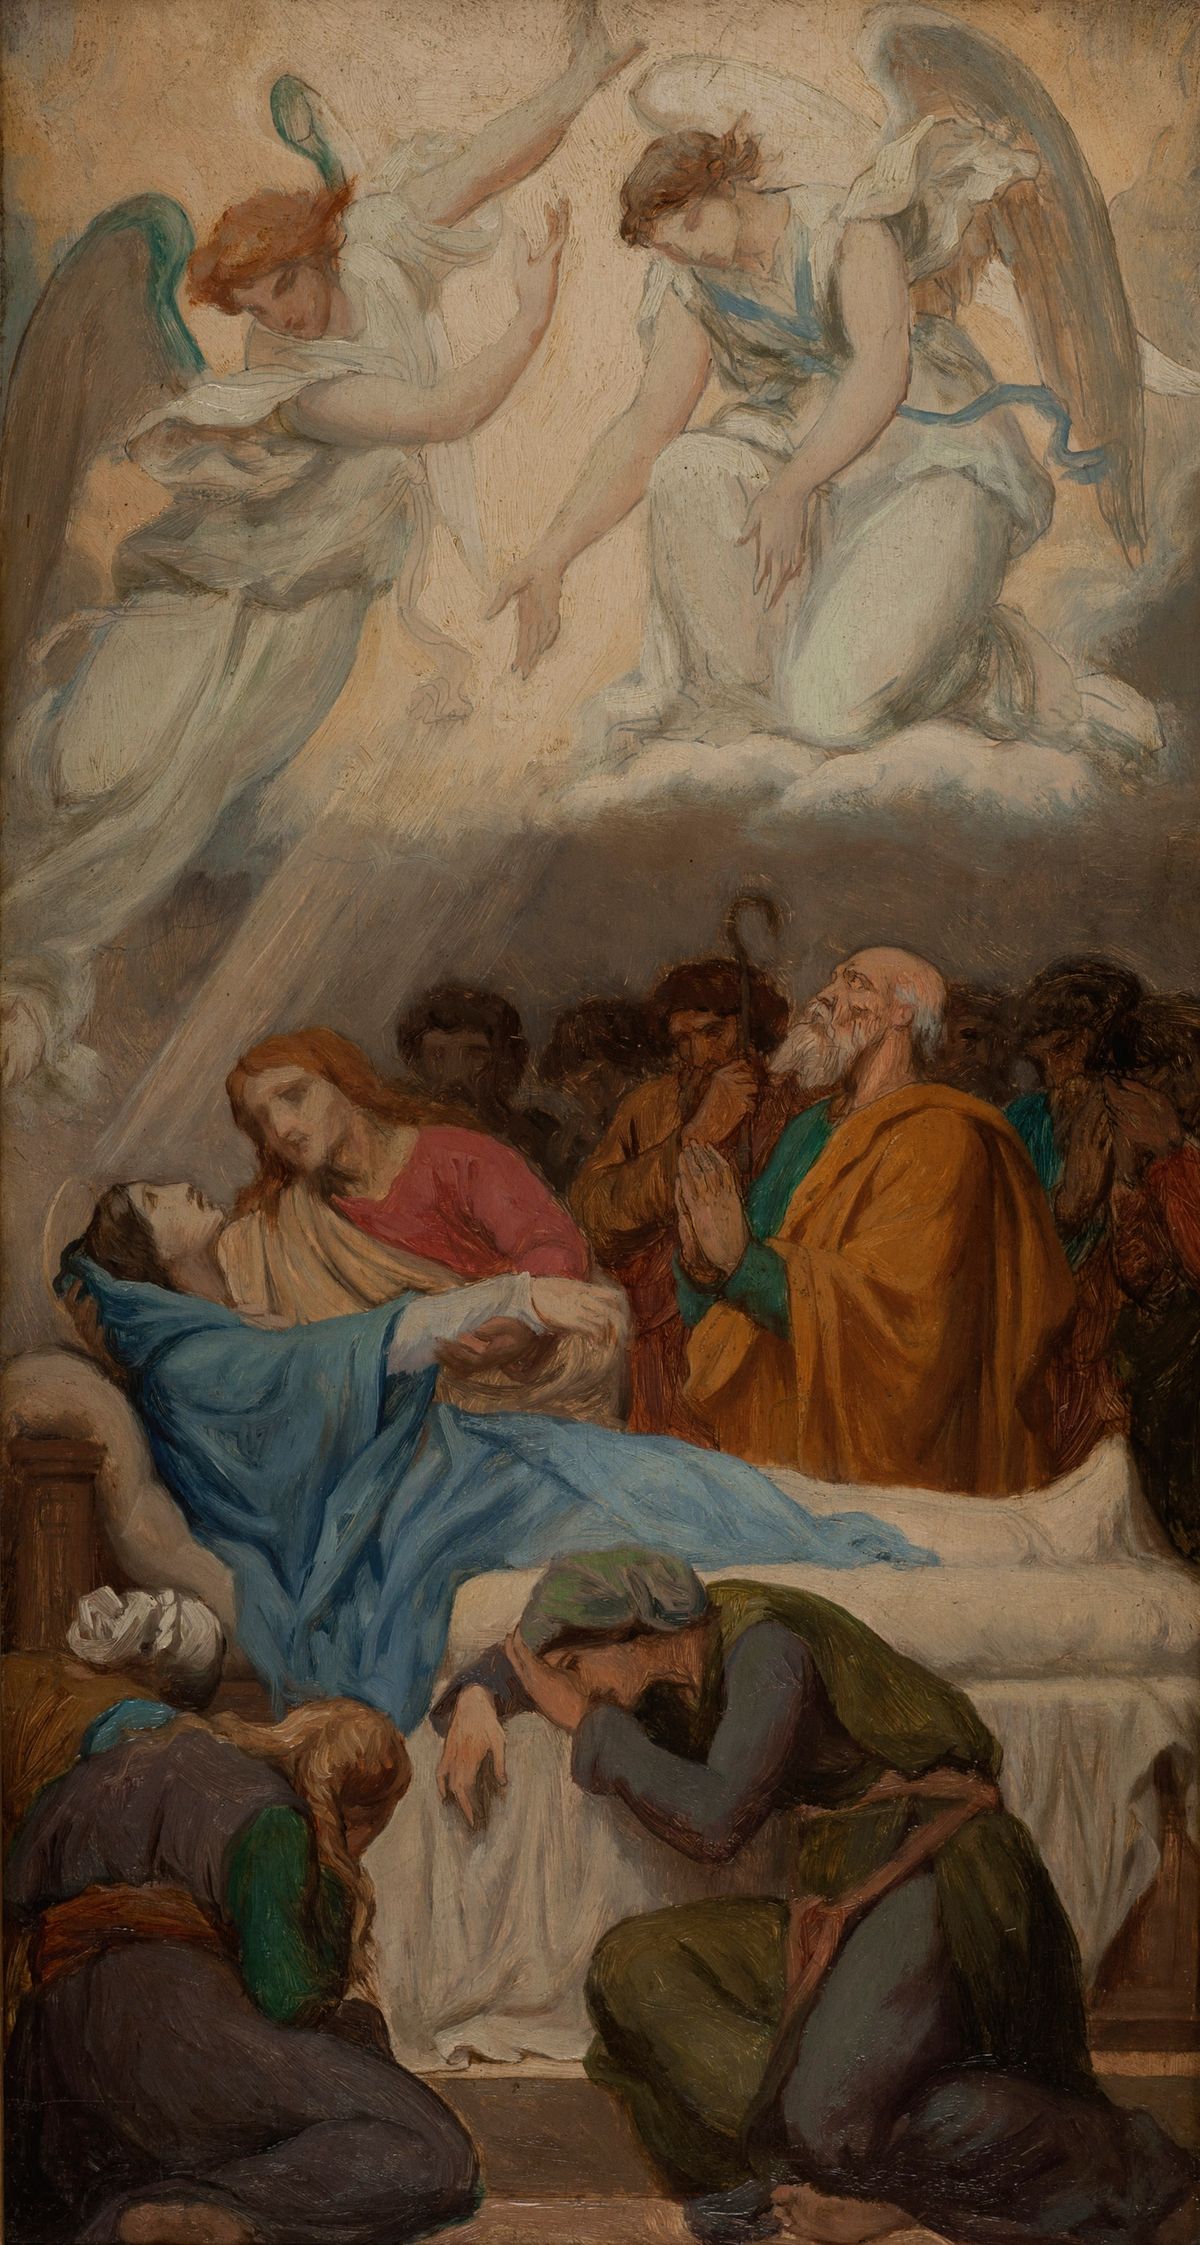 La Mort de la Vierge / Death of the Virgin Mary (1869) by Emile Bin - Public Domain Catholic Painting